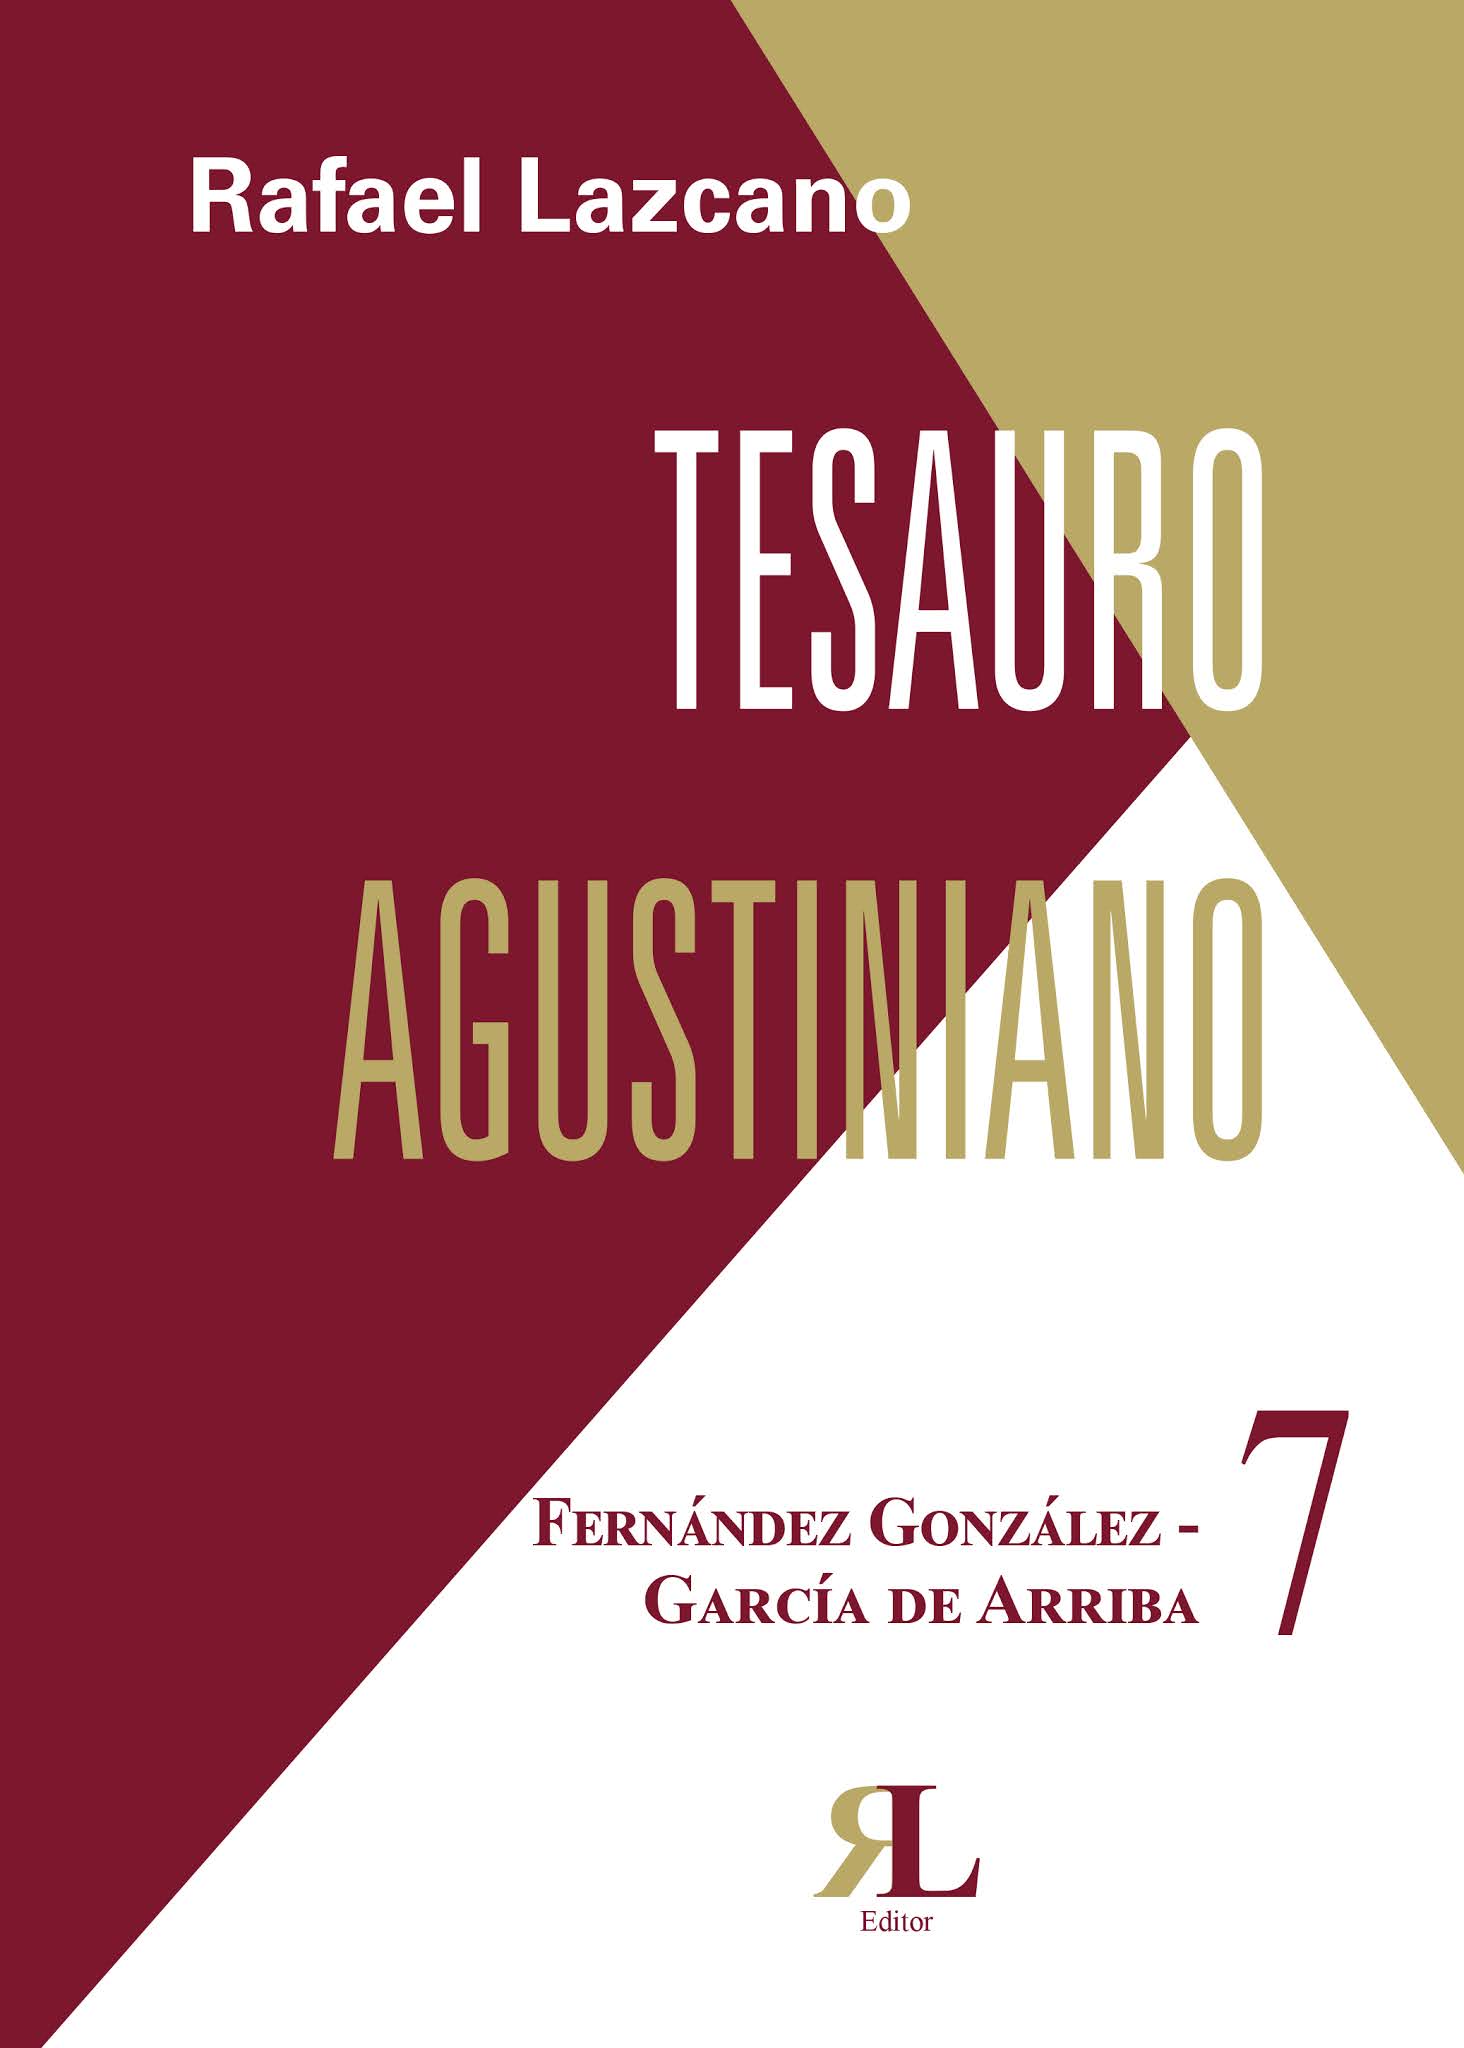 Tesauro Agustiniano